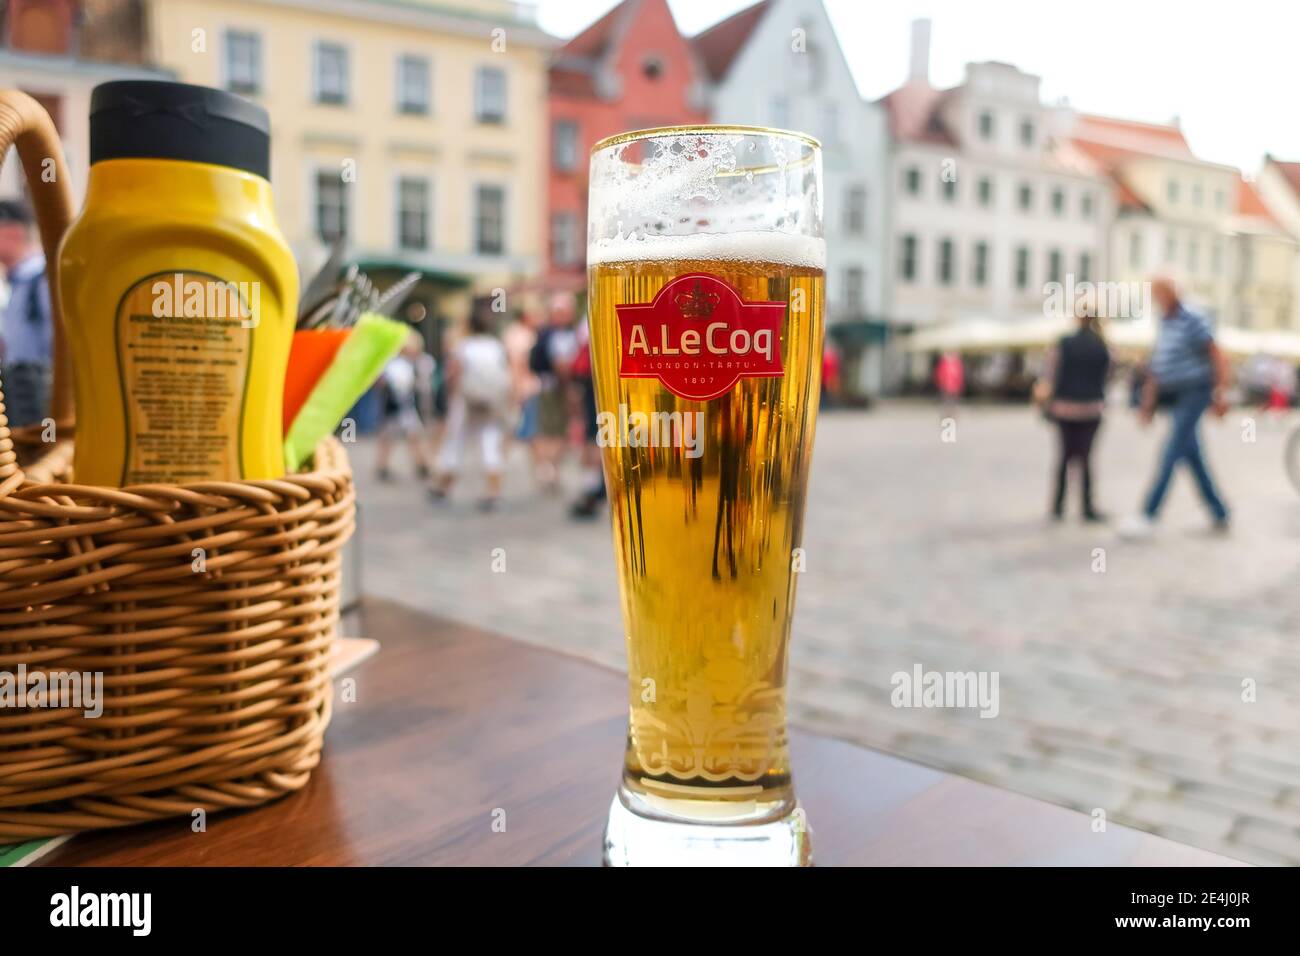 Tagesansicht eines Pint-Glases des estnischen Bieres A le Coq in einem Café im Freien auf dem Altstädter Ring von Tallinn Estland. Stockfoto